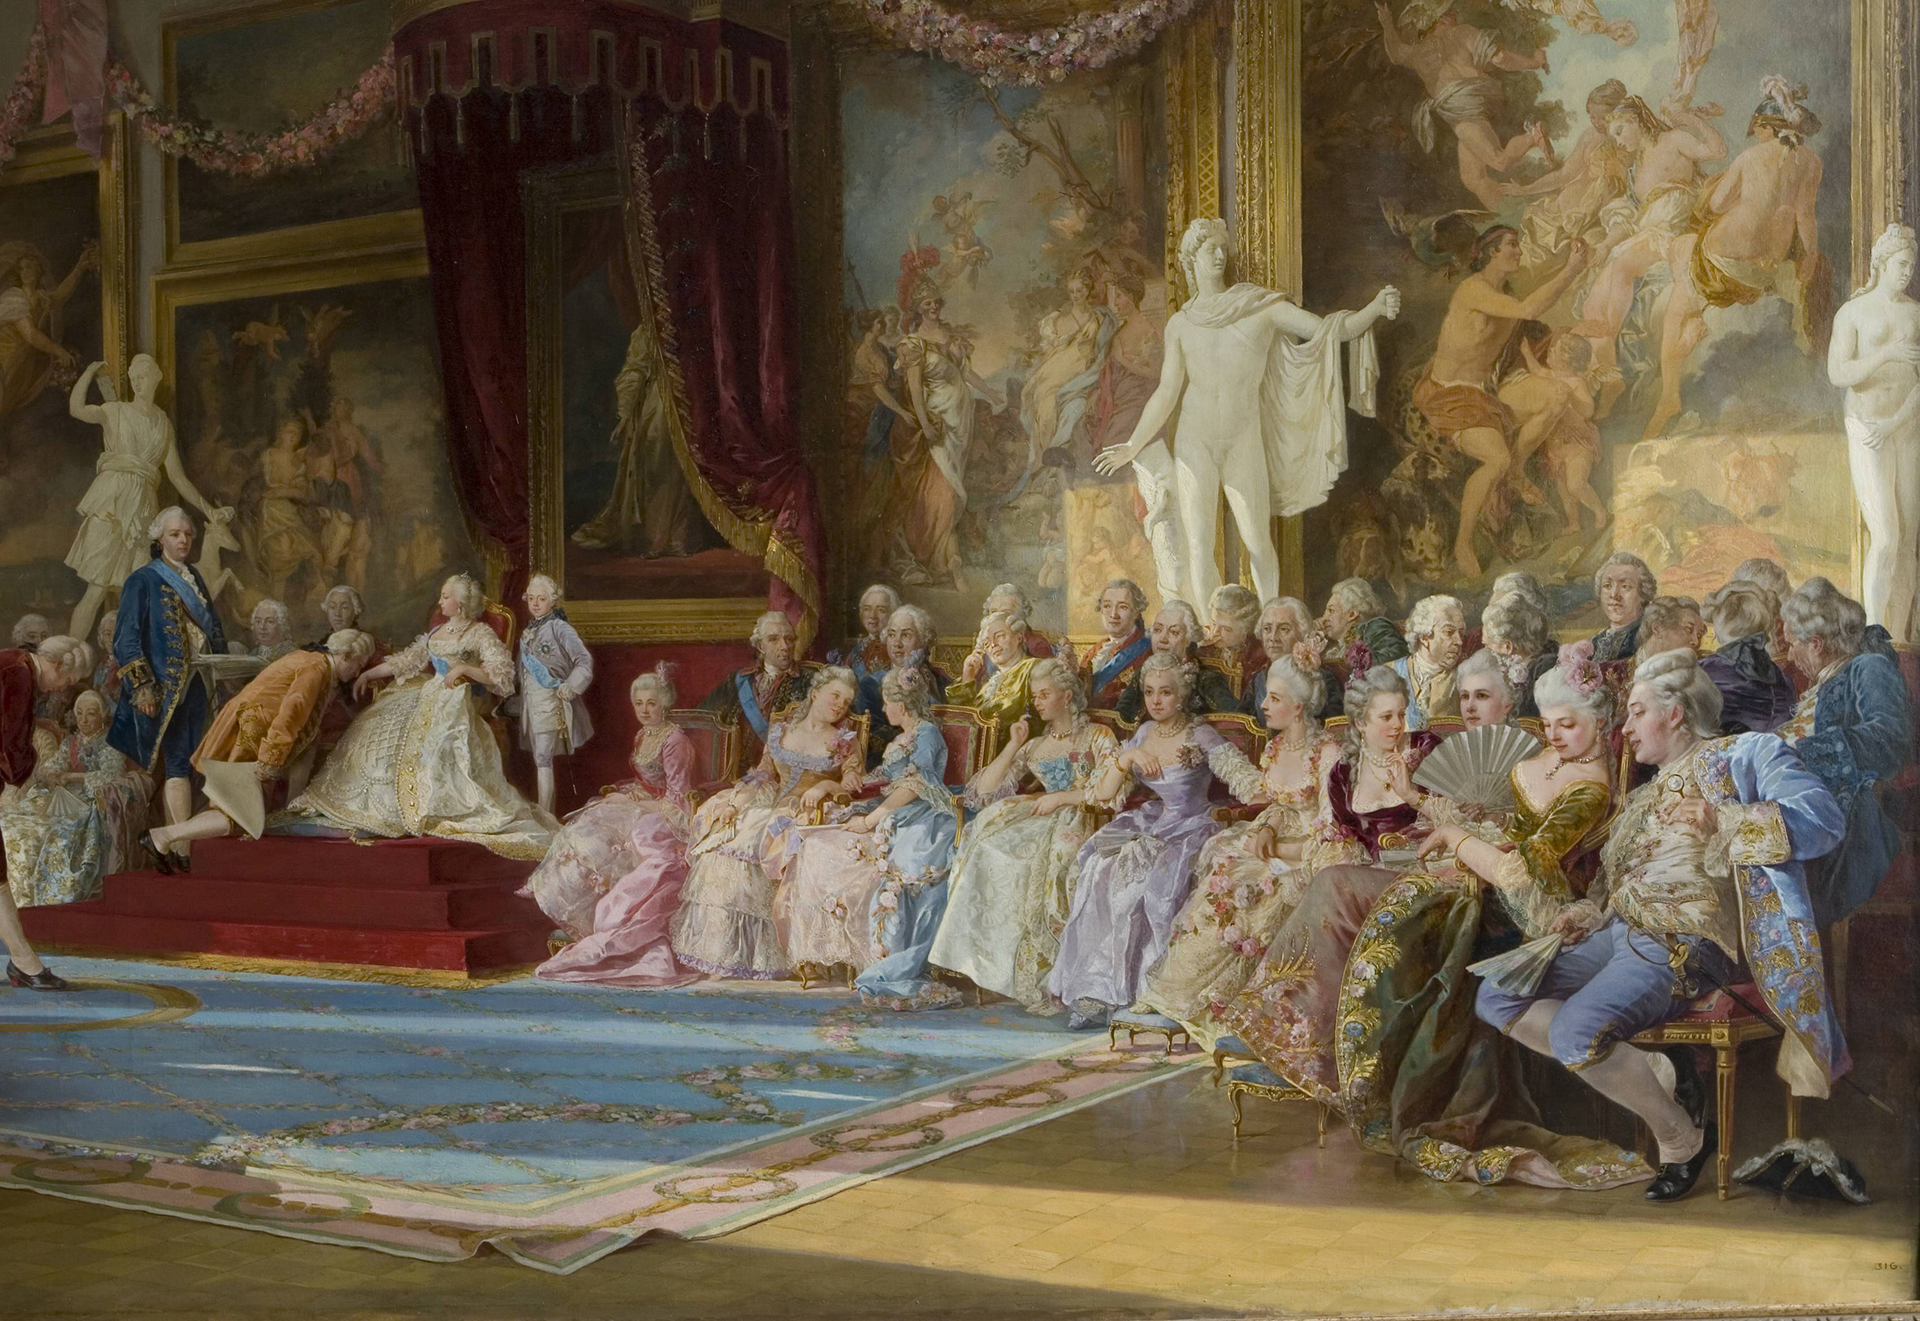 2 половина 18 века года. Императорский театр Анны Иоанновны (Петербург). Инаугурация императорской Академии художеств 7 июля 1765 года.